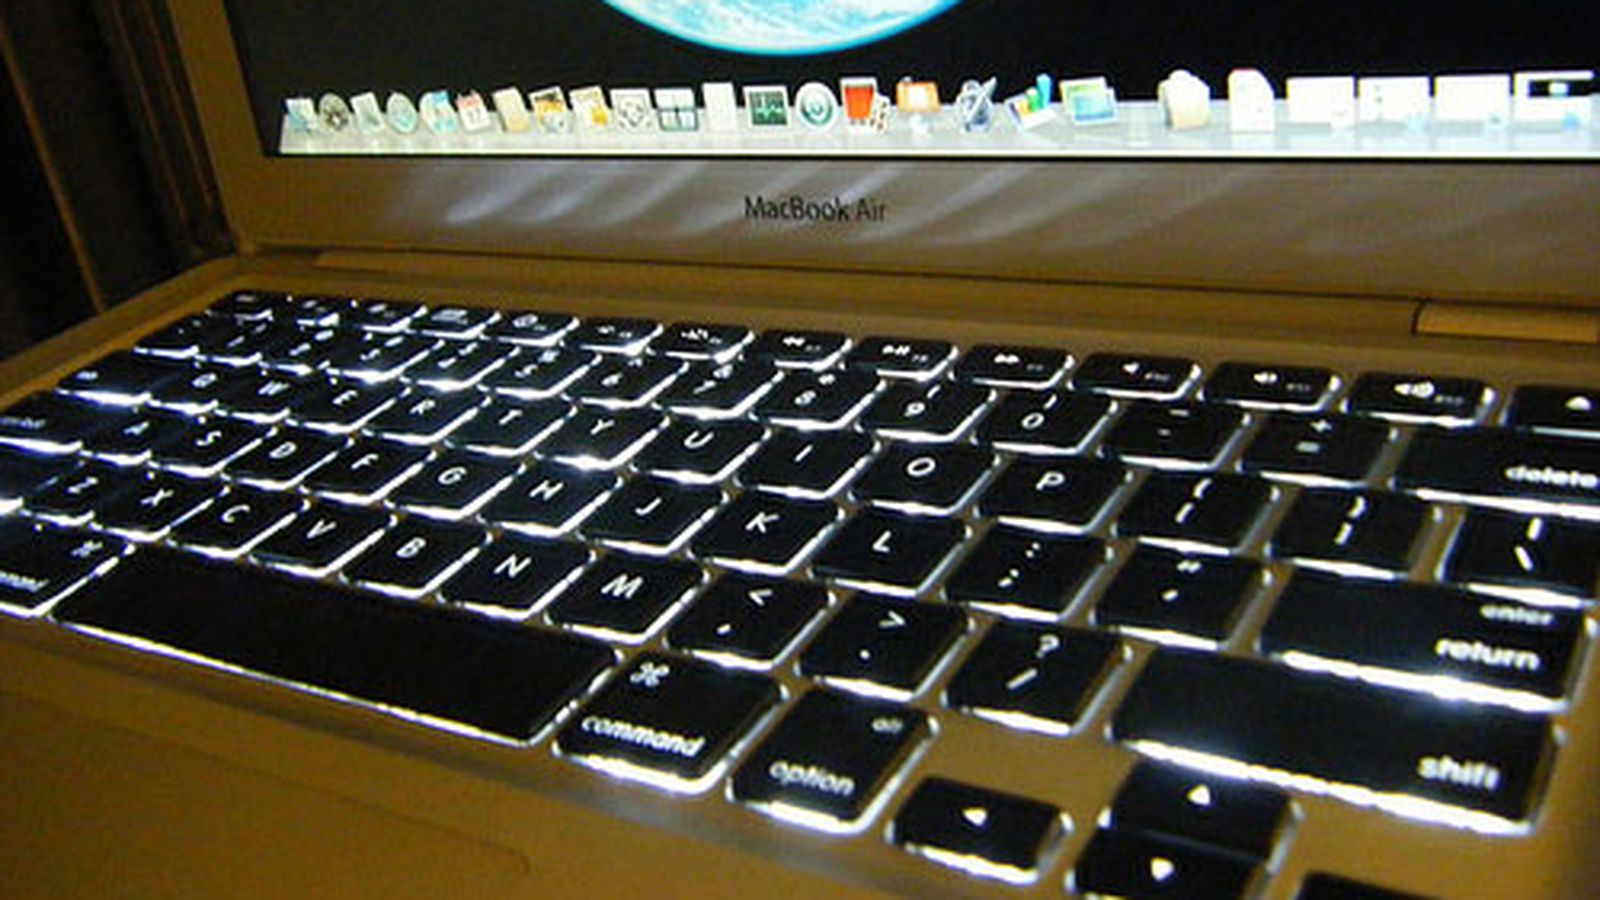 Godkendelse udsættelse venstre Backlit Keyboard to Return in New MacBook Air? - MacRumors